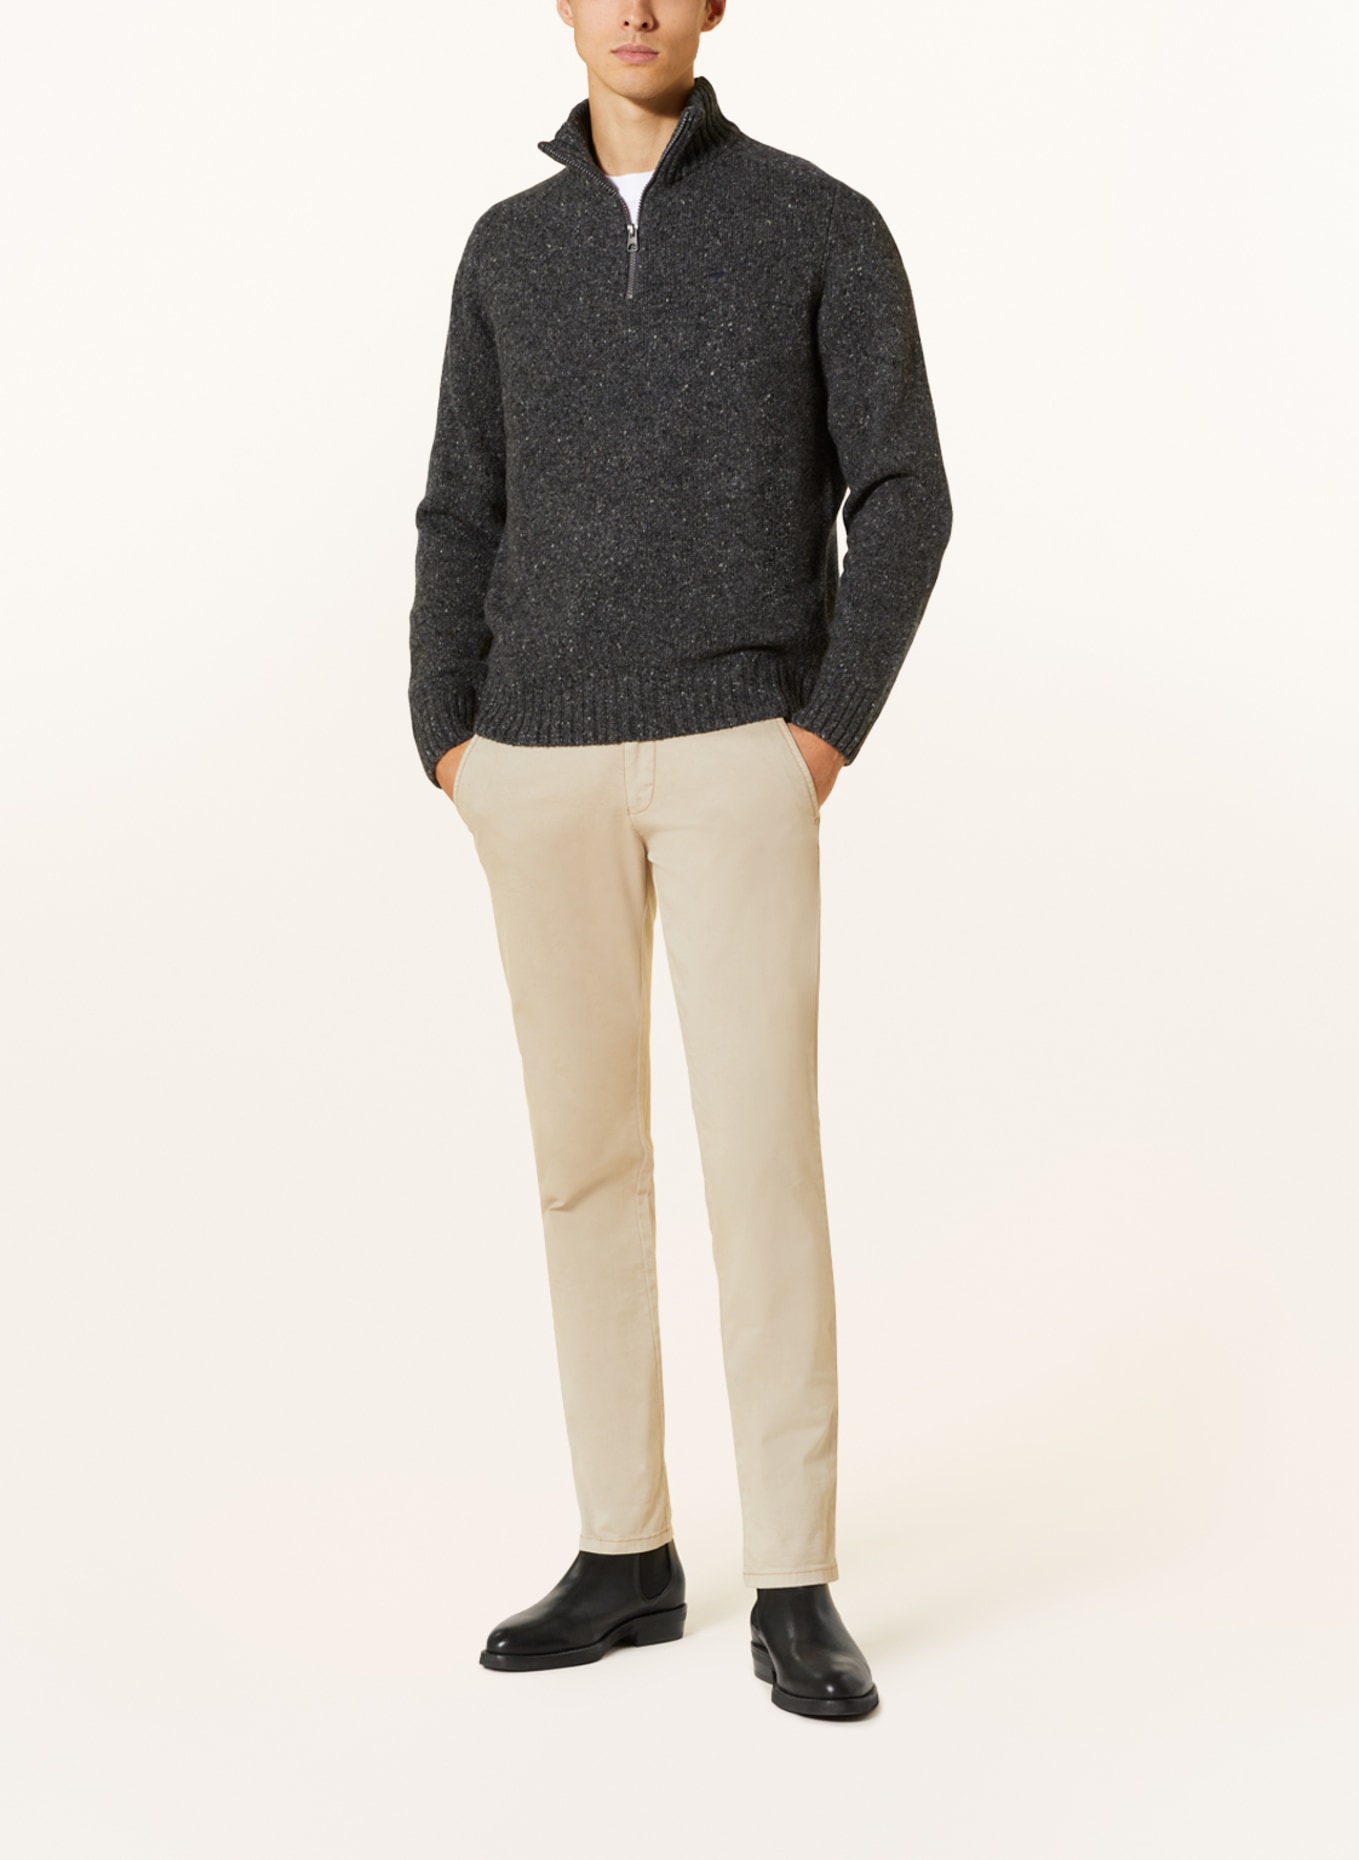 FYNCH-HATTON Half-zip sweater, Color: DARK GRAY/ GRAY (Image 2)